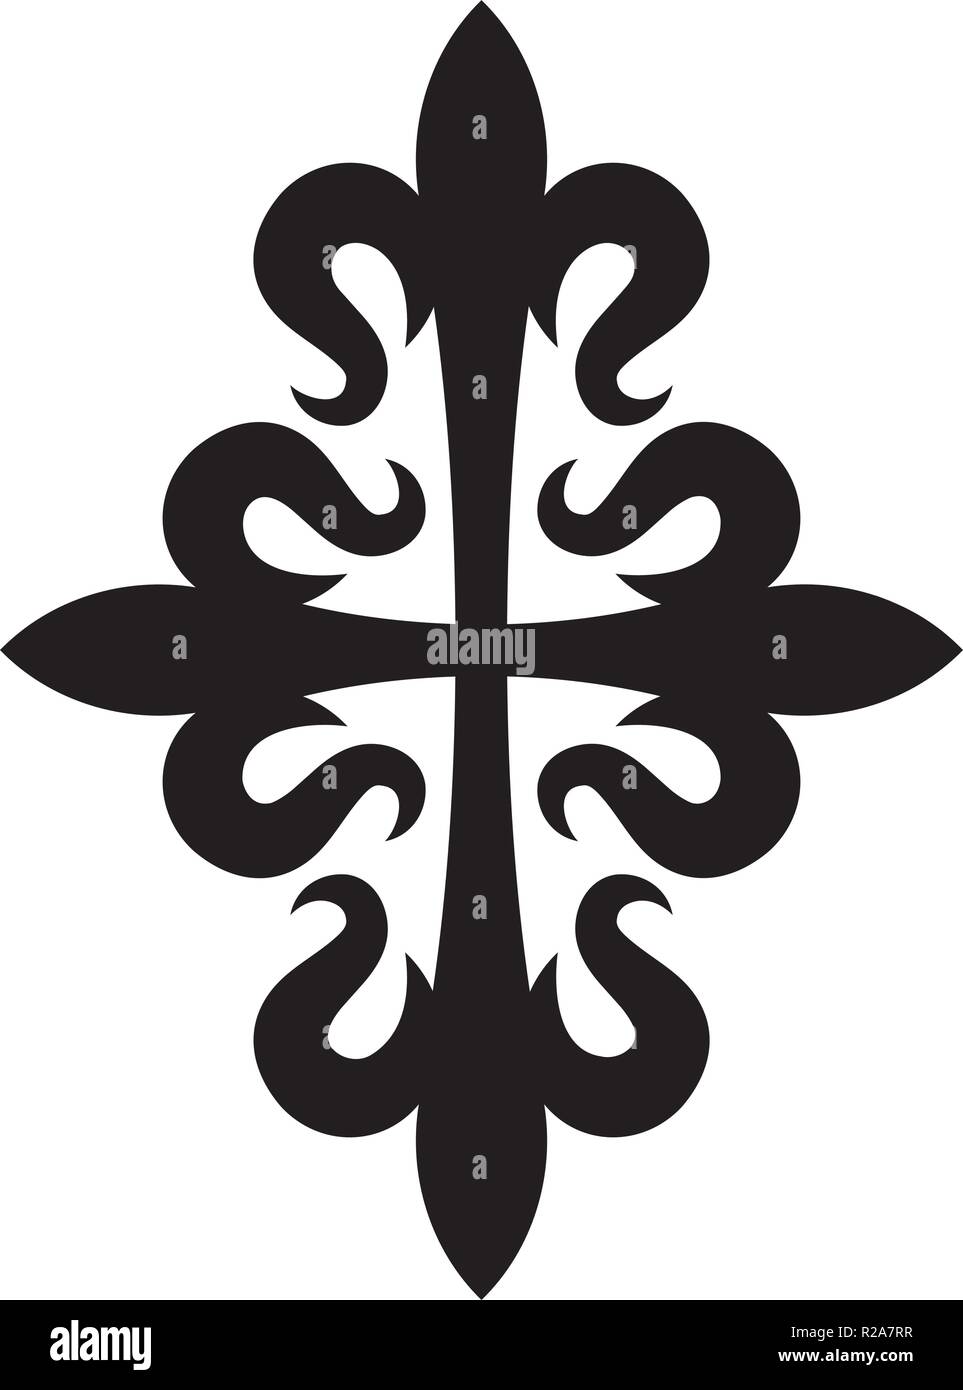 Croix Fleurdelisée (Cross of Lilies), Medieval heraldic cross. Stock Vector